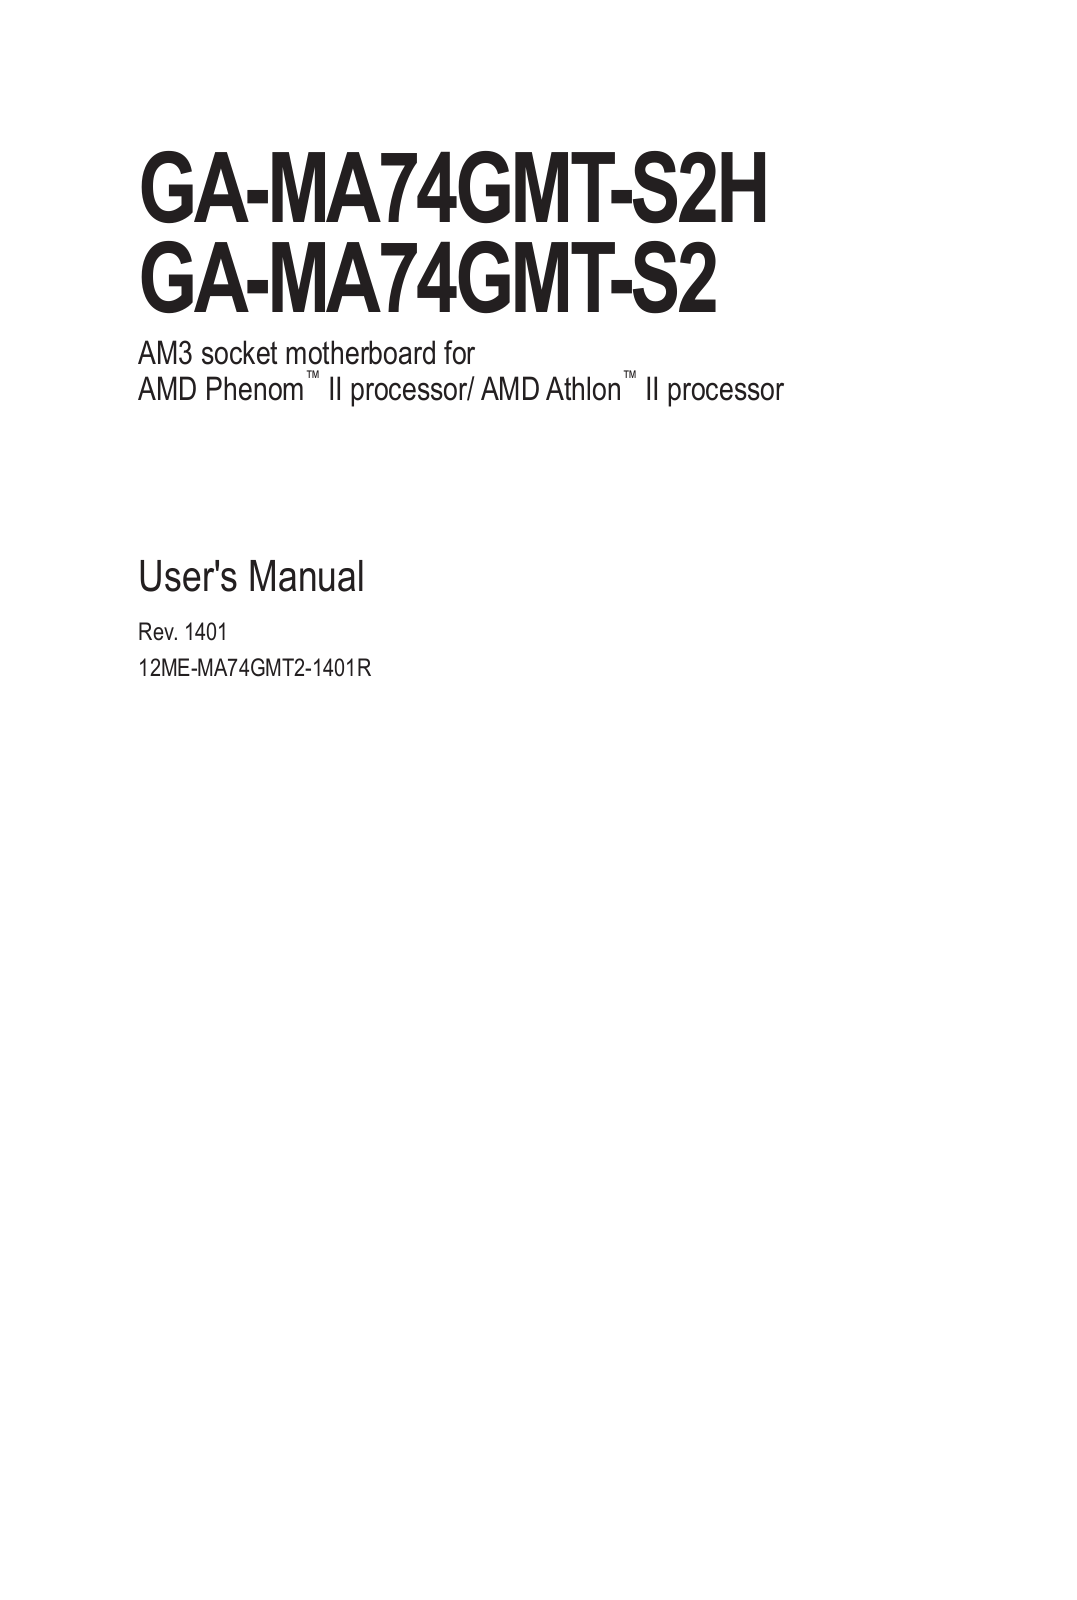 Gigabyte GA-MA74GMT-S2 (rev.1.0), GA-MA74GMT-S2 (rev.1.4), GA-MA74GMT-S2 (rev.1.3) User Manual